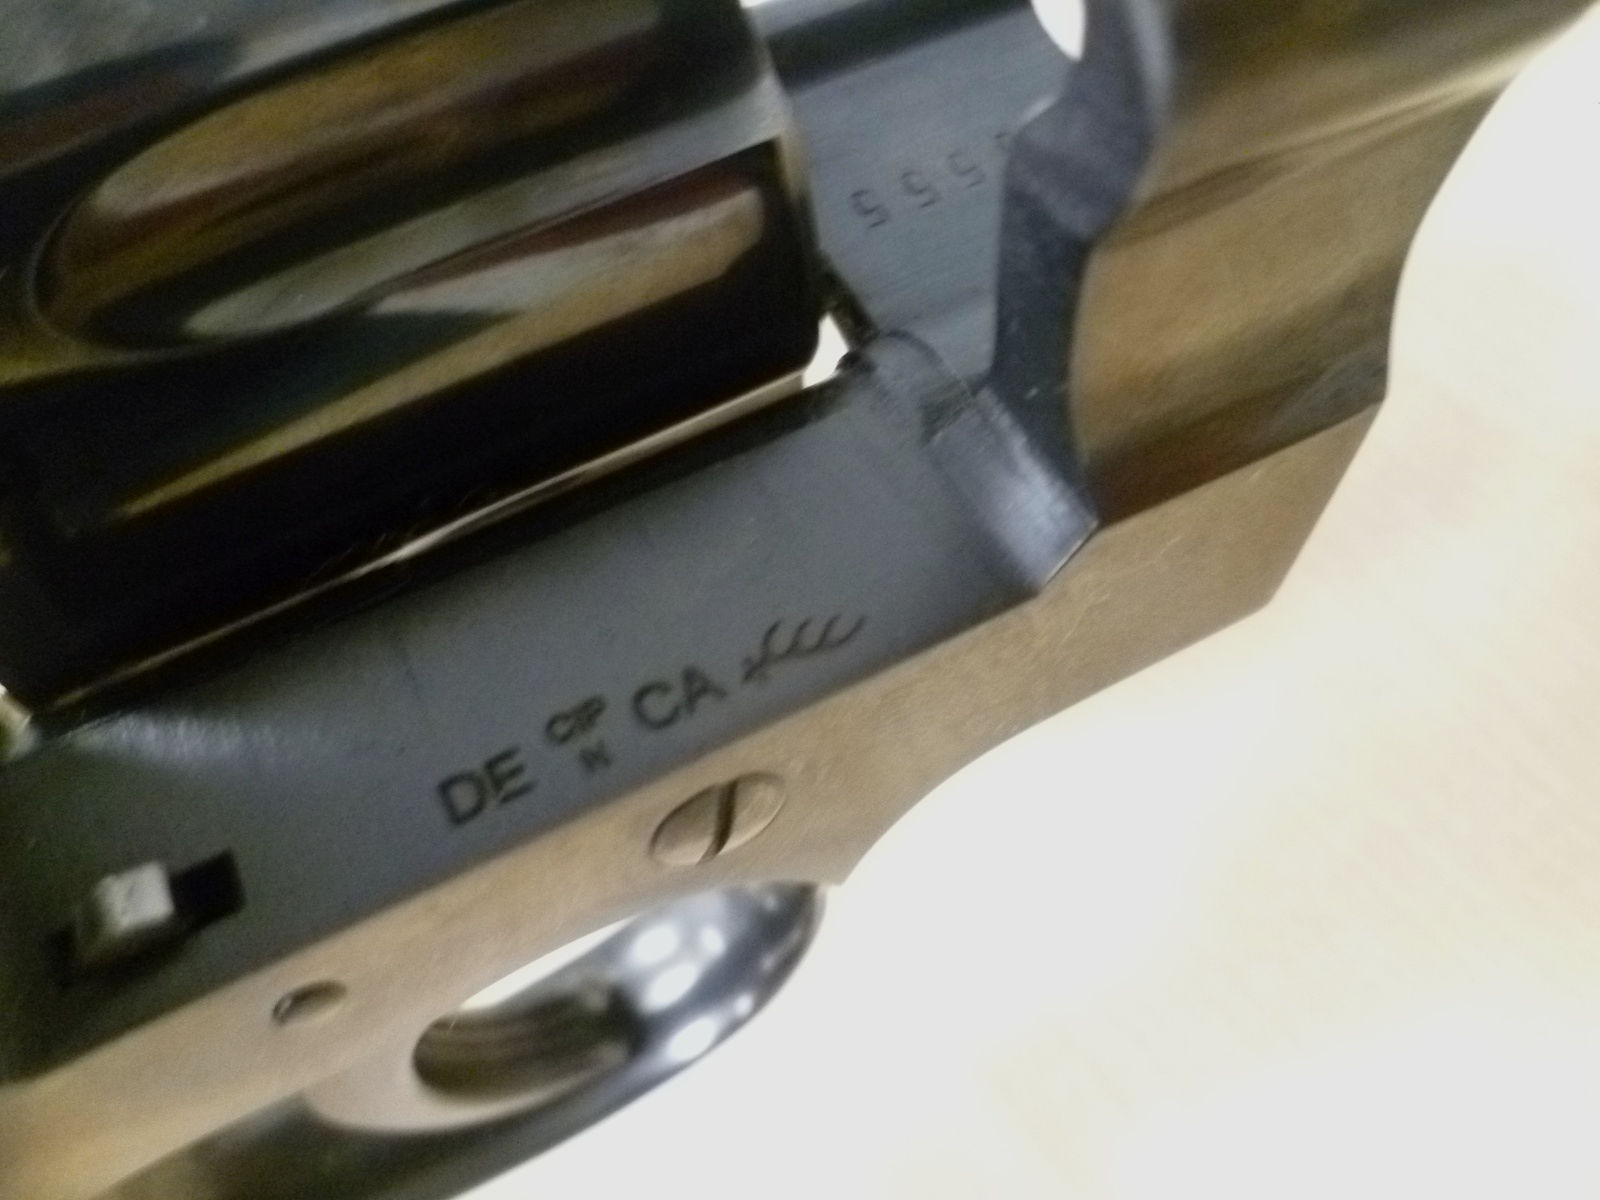 Revolver Colt Python 357 .357 Magnum Baujahr 1966